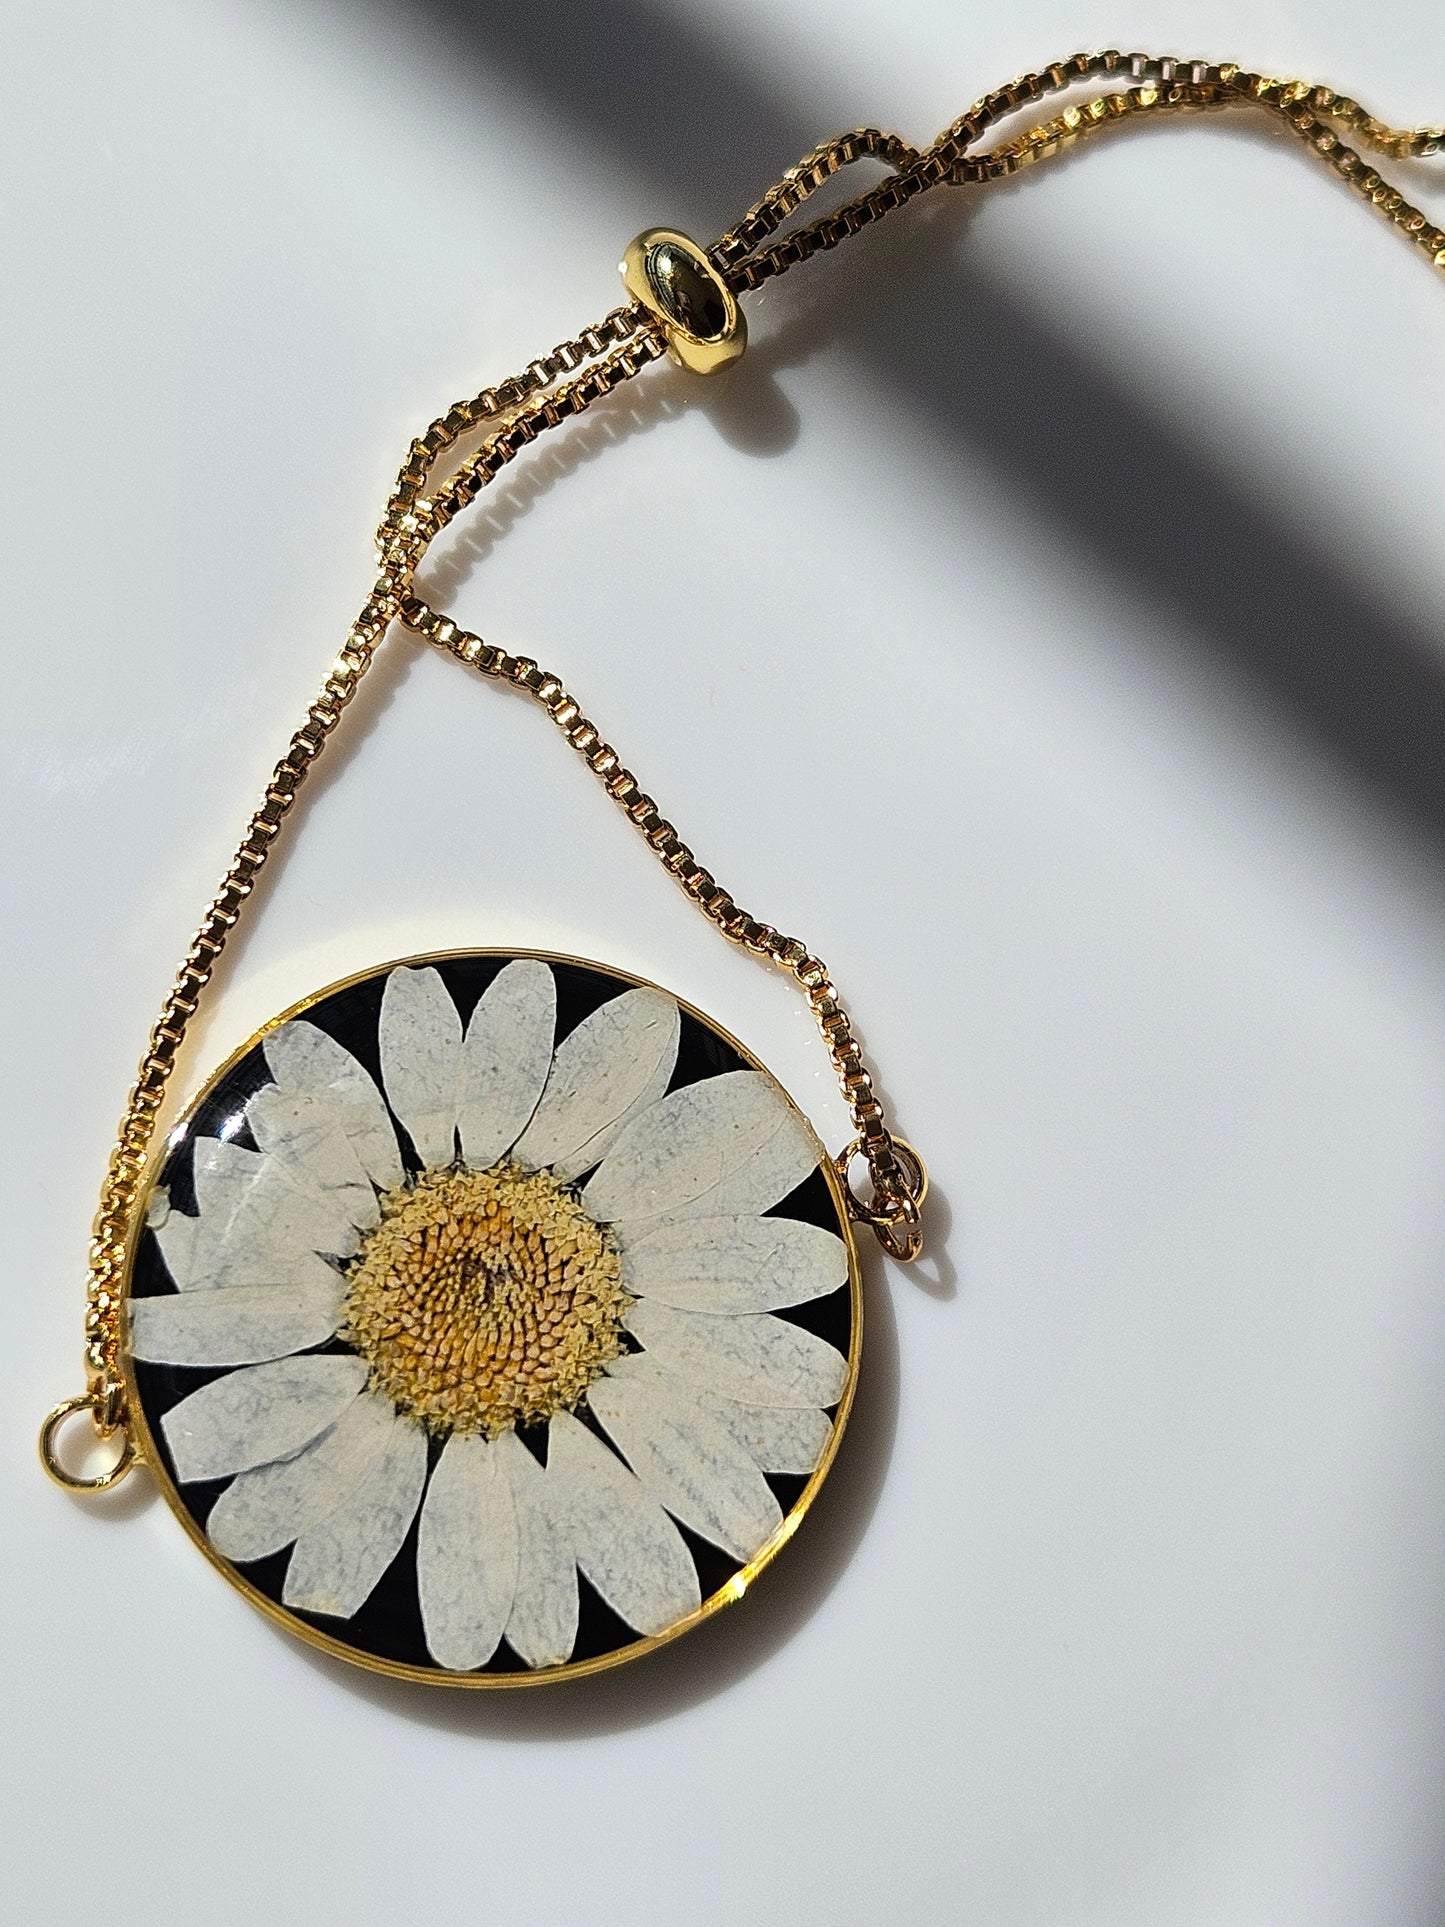 Daisy Bracelet | Real Flower Jewellery